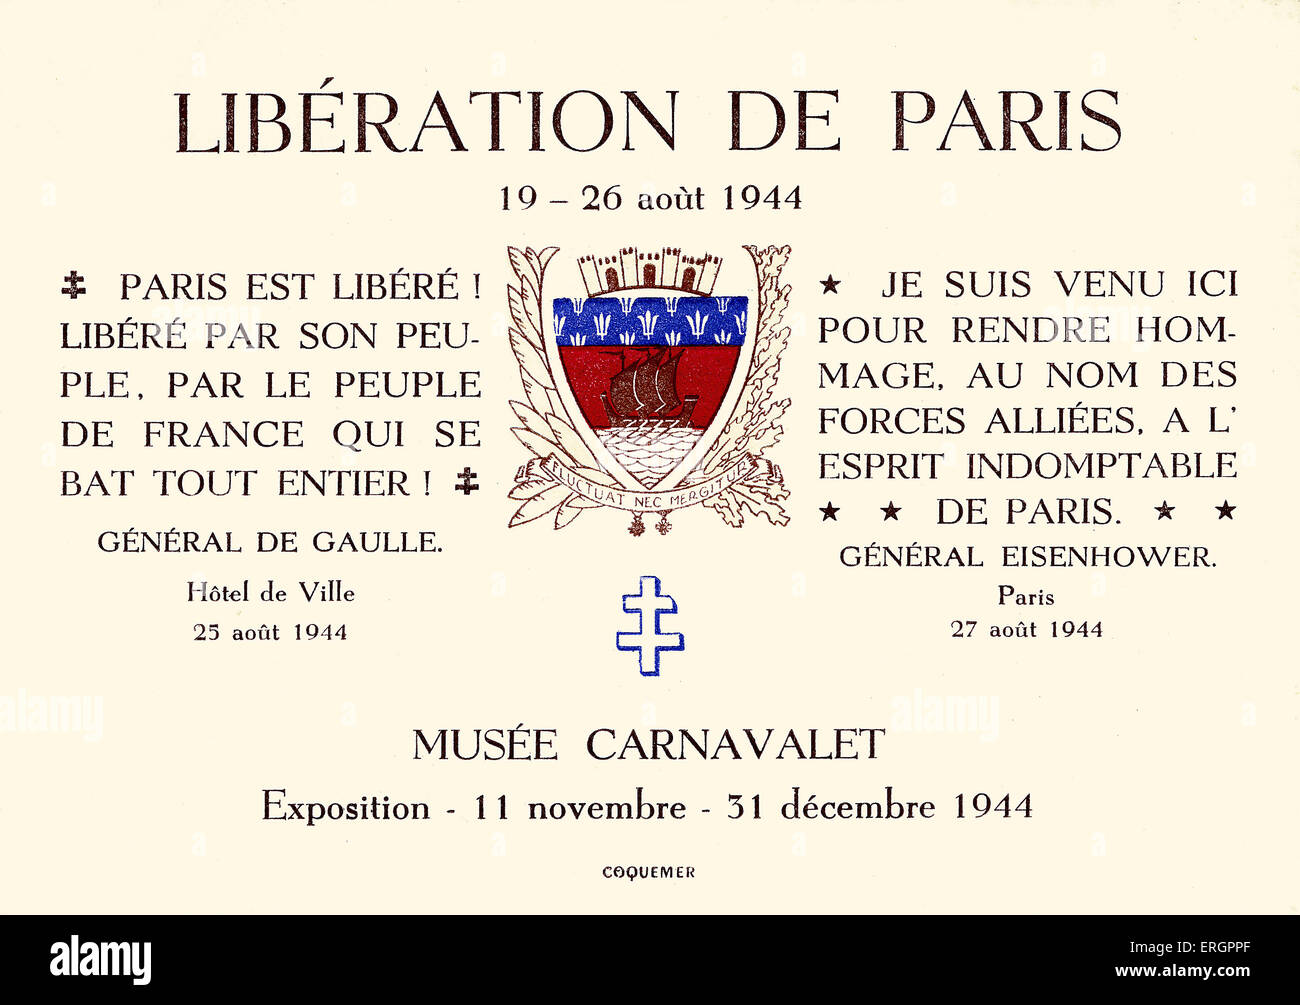 Durante la Seconda guerra mondiale - Liberazione di Parigi. Cartolina promuovere una mostra sulla liberazione di Parigi (19-26 agosto 1944), al Musee Foto Stock